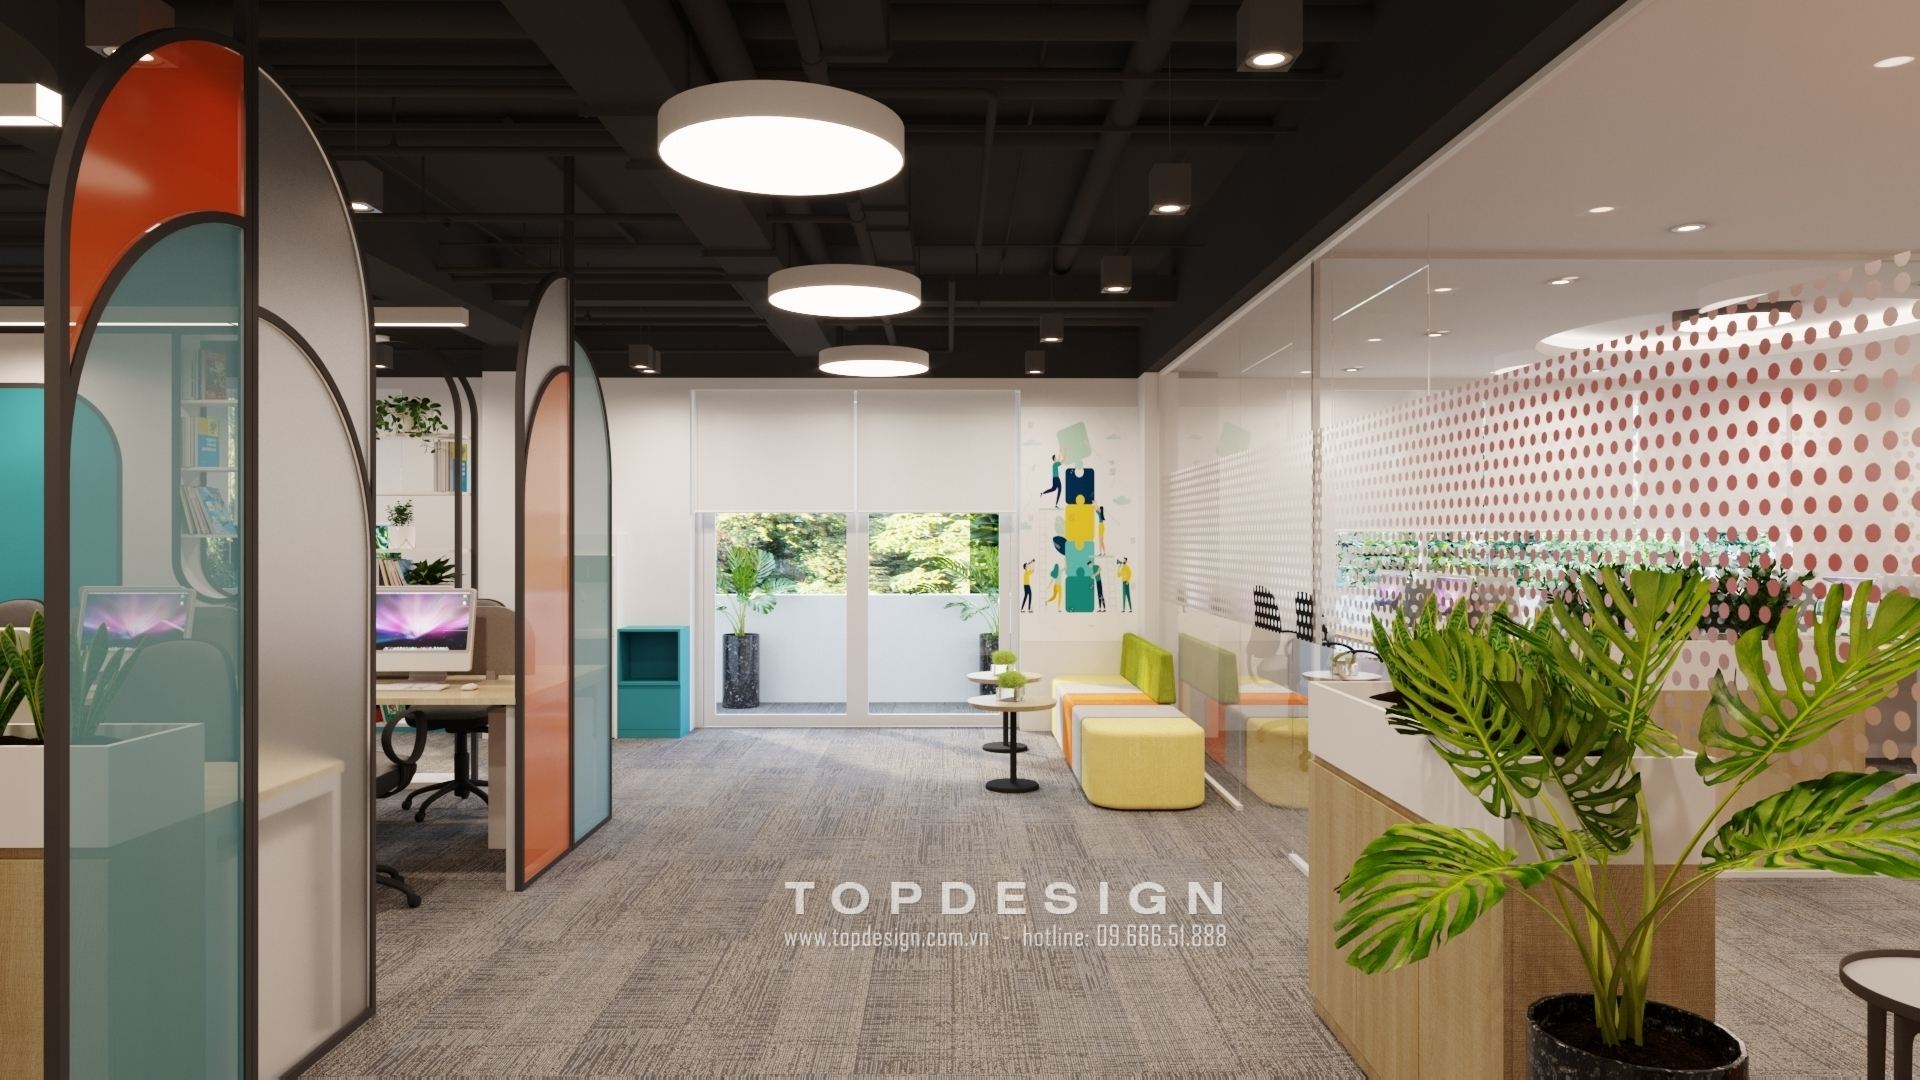 2. Xu hướng thiết kế nội thất văn phòng - Sự kết hợp linh hoạt giữa làm việc và nghỉ ngơi trong không gian khu vực văn phòng